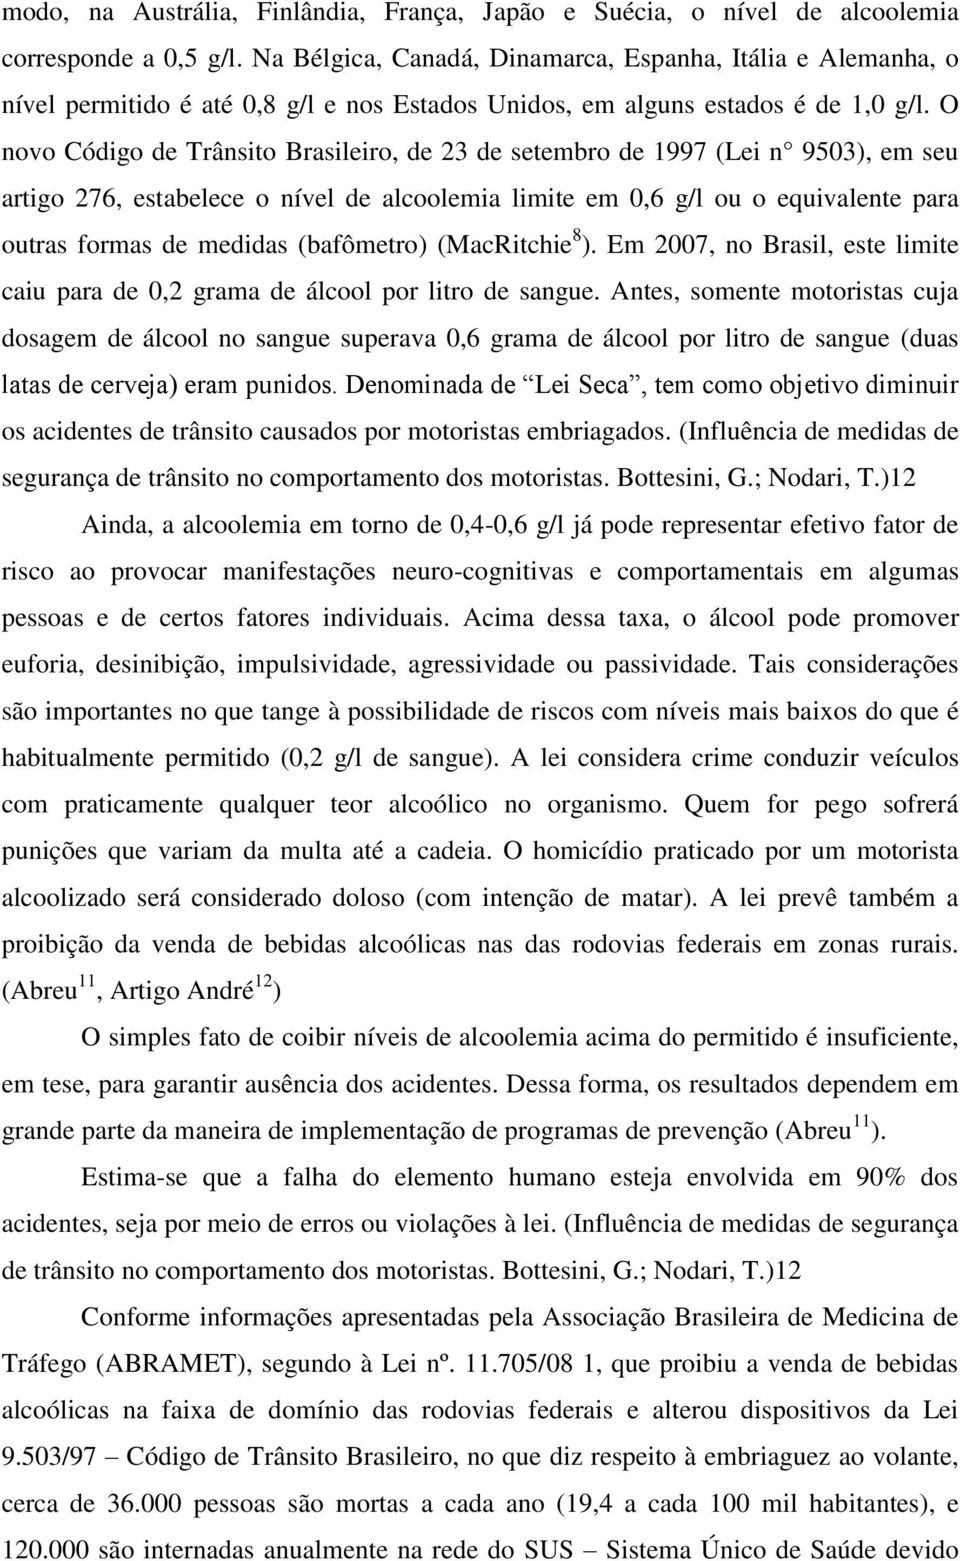 O novo Código de Trânsito Brasileiro, de 23 de setembro de 1997 (Lei n 9503), em seu artigo 276, estabelece o nível de alcoolemia limite em 0,6 g/l ou o equivalente para outras formas de medidas